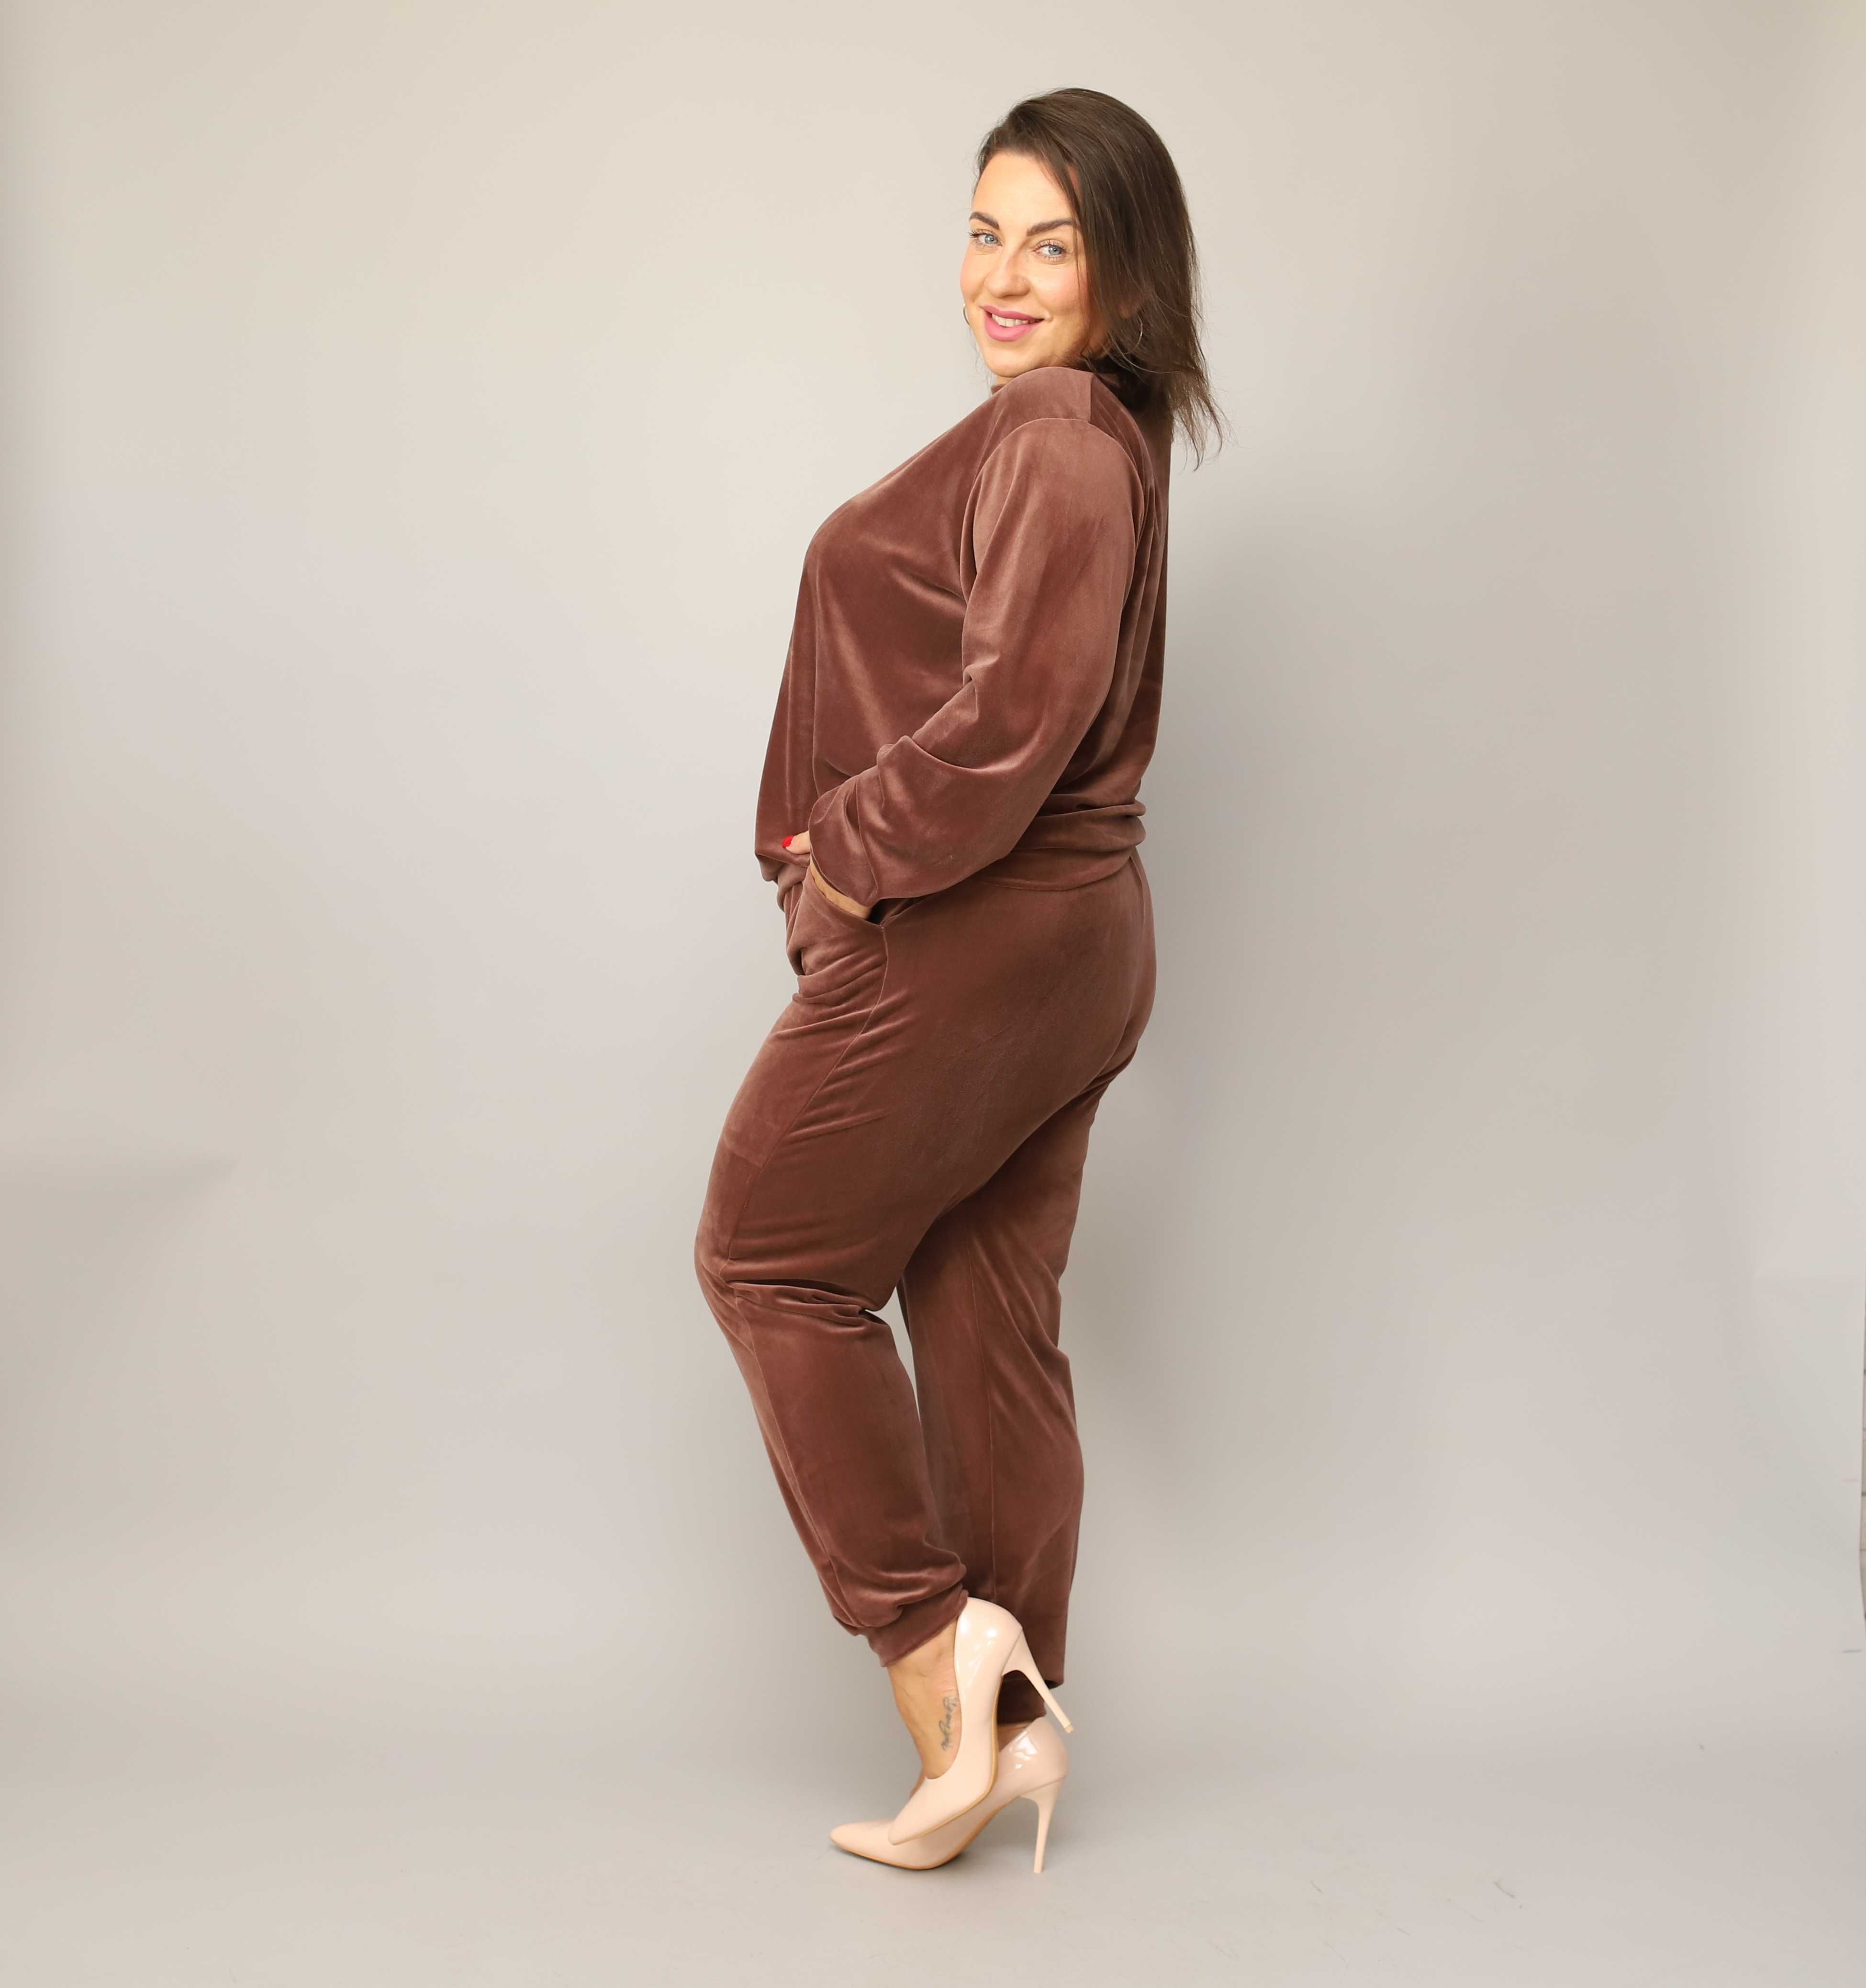 Czekoladowy DRES WELUROWY damski komplet bluza + spodnie JESIEŃ 2XL 44